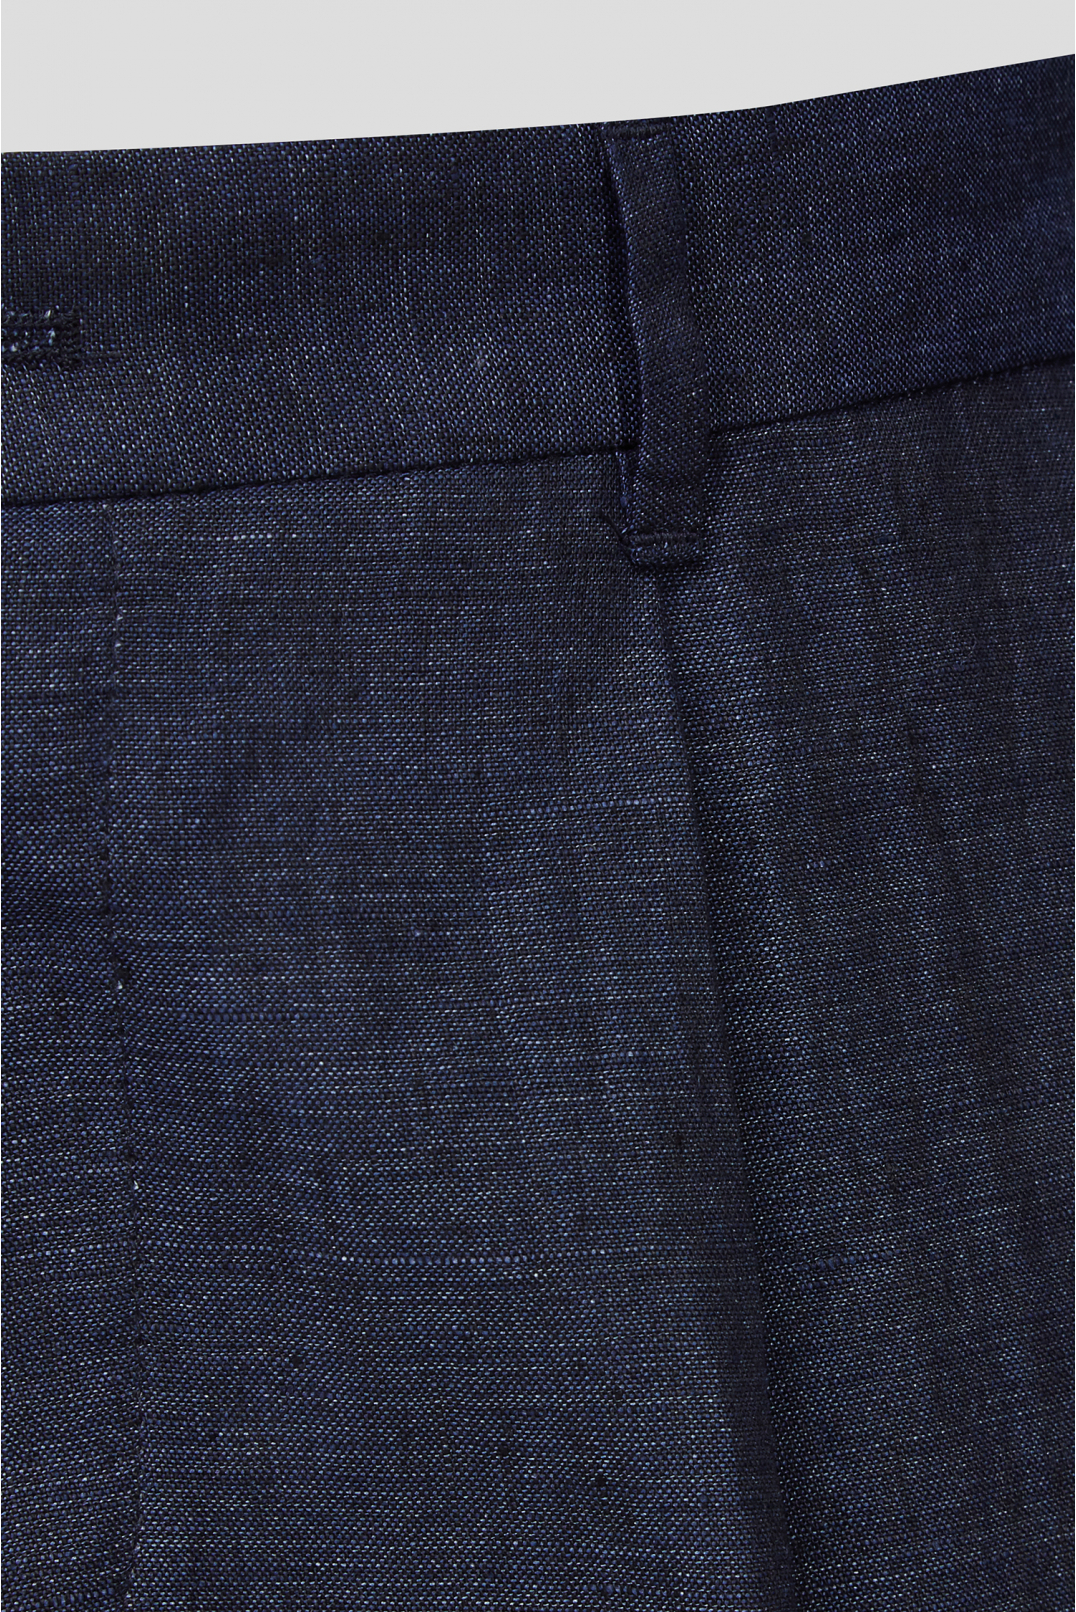 Мужские темно-синие льняные шорты  - 3